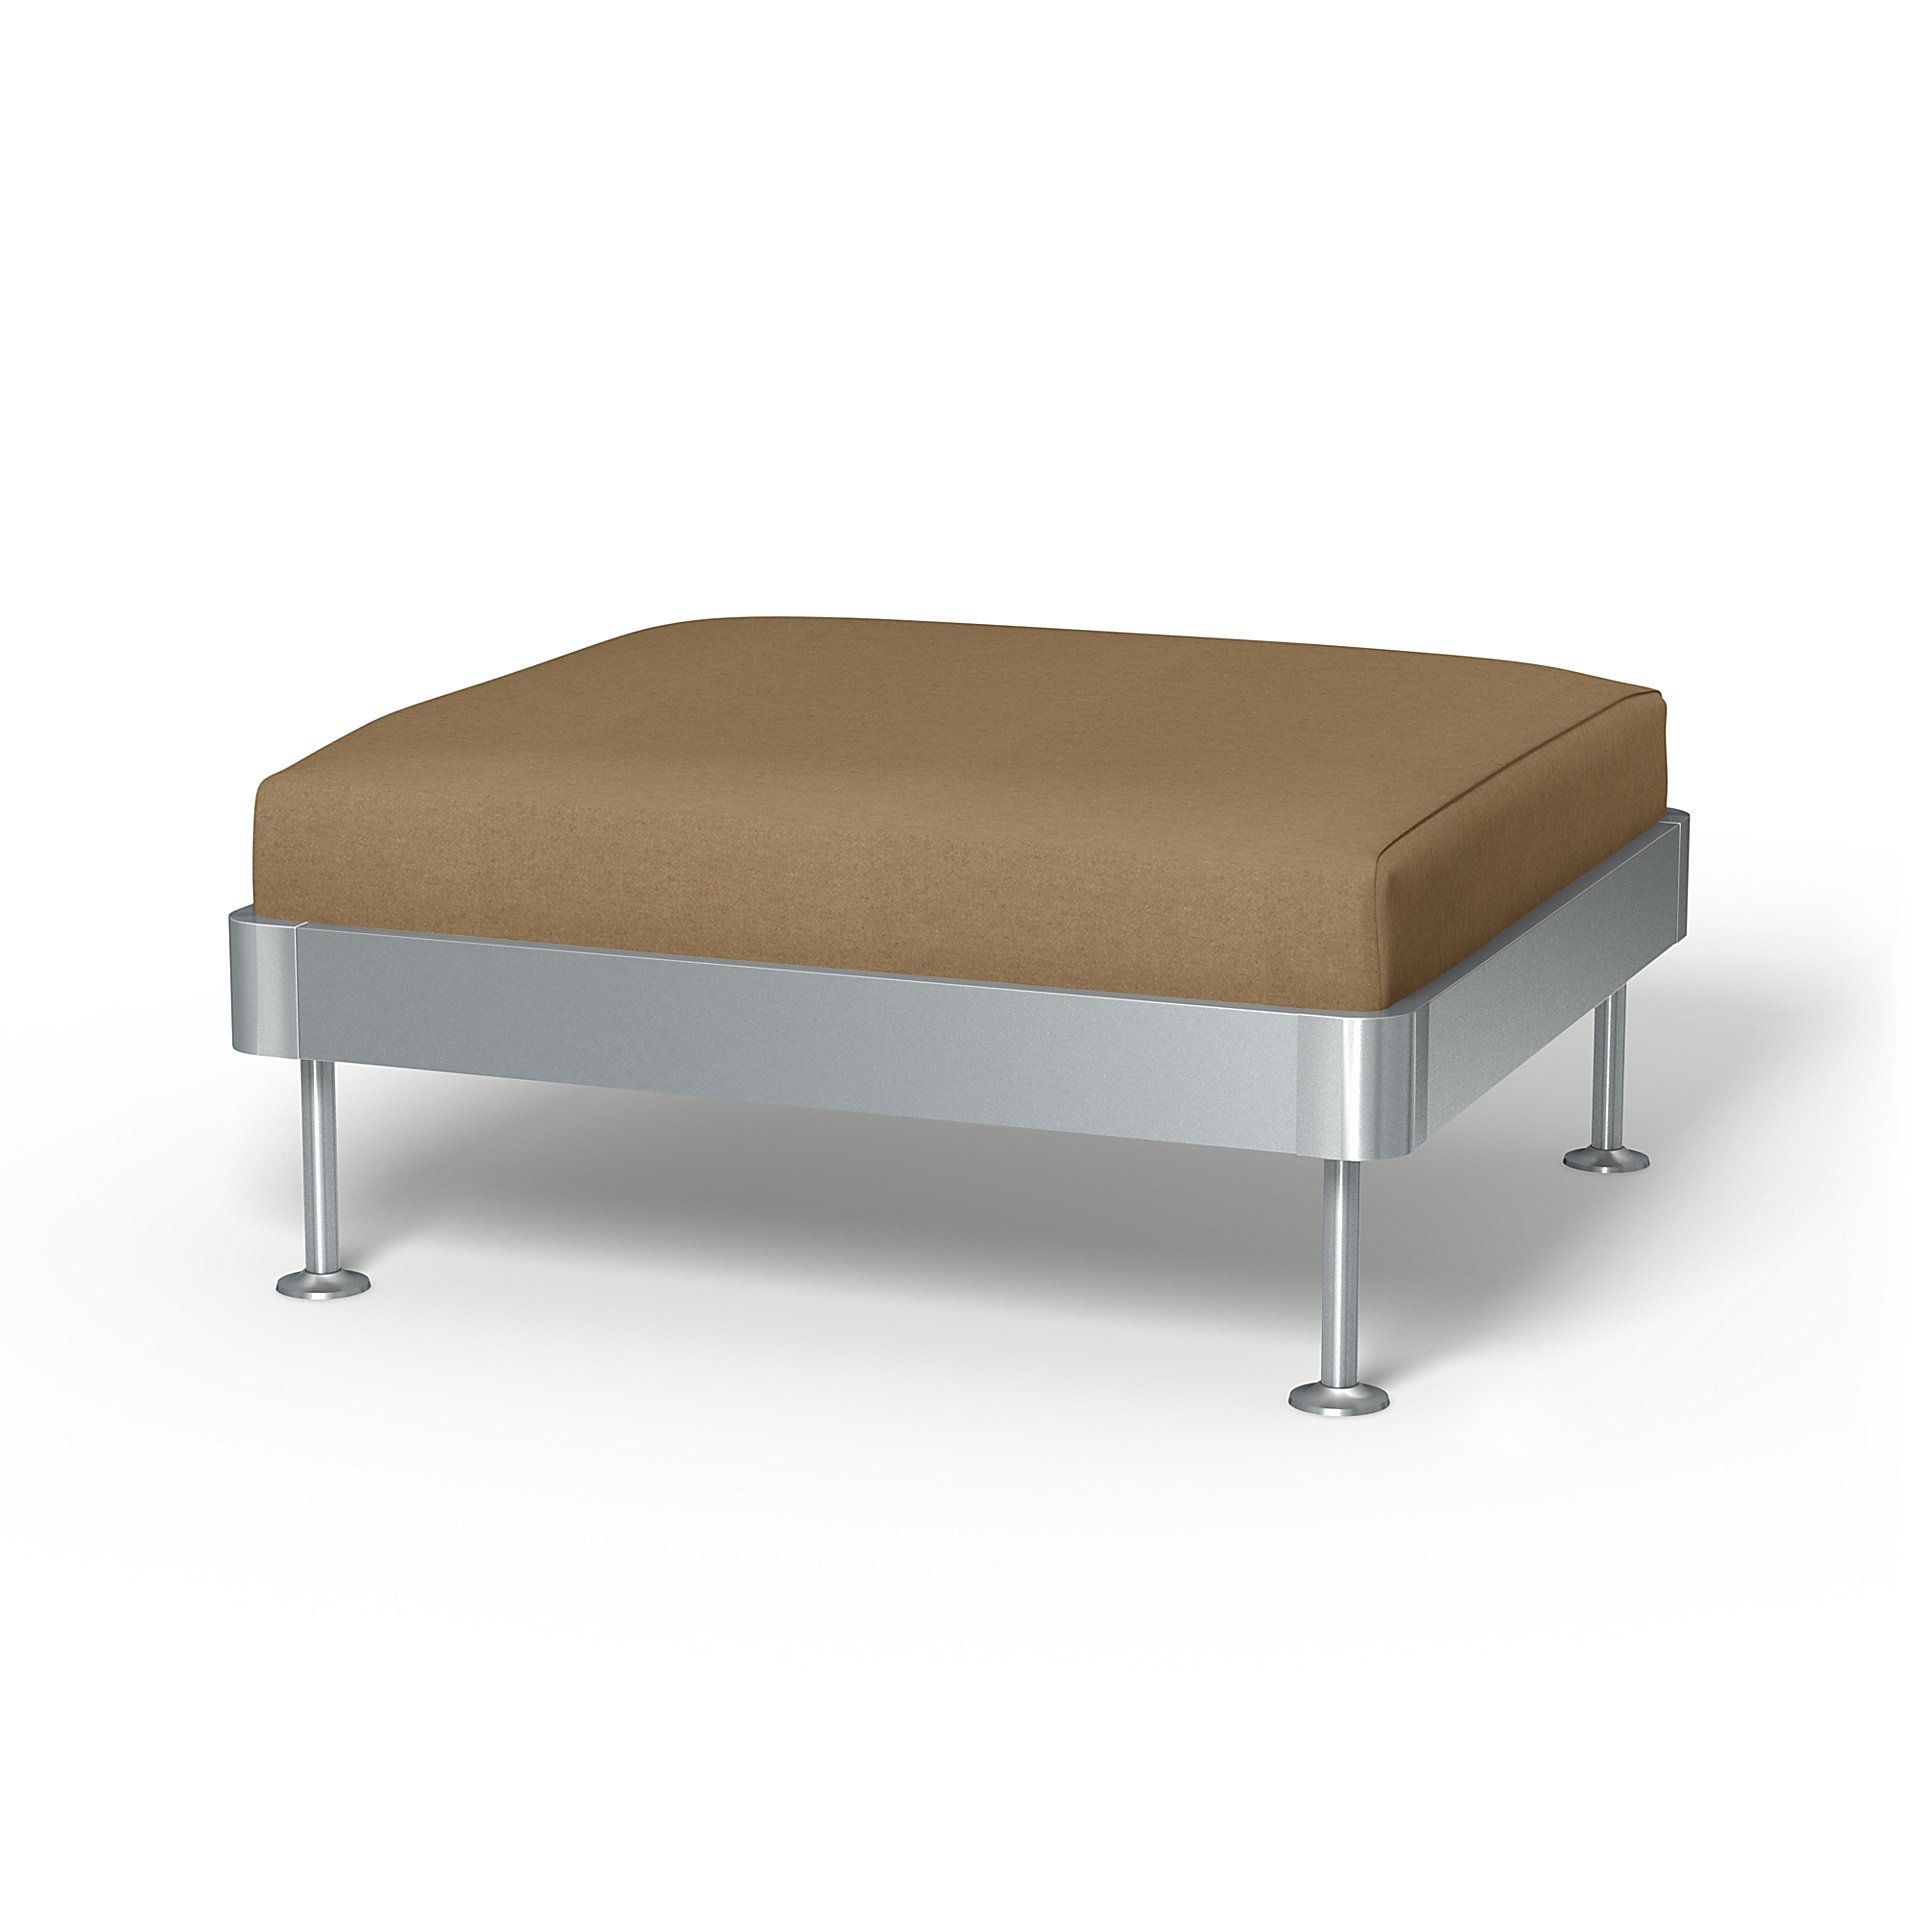 IKEA - Delaktig 1 Seat Platform Cover, Sand, Wool - Bemz